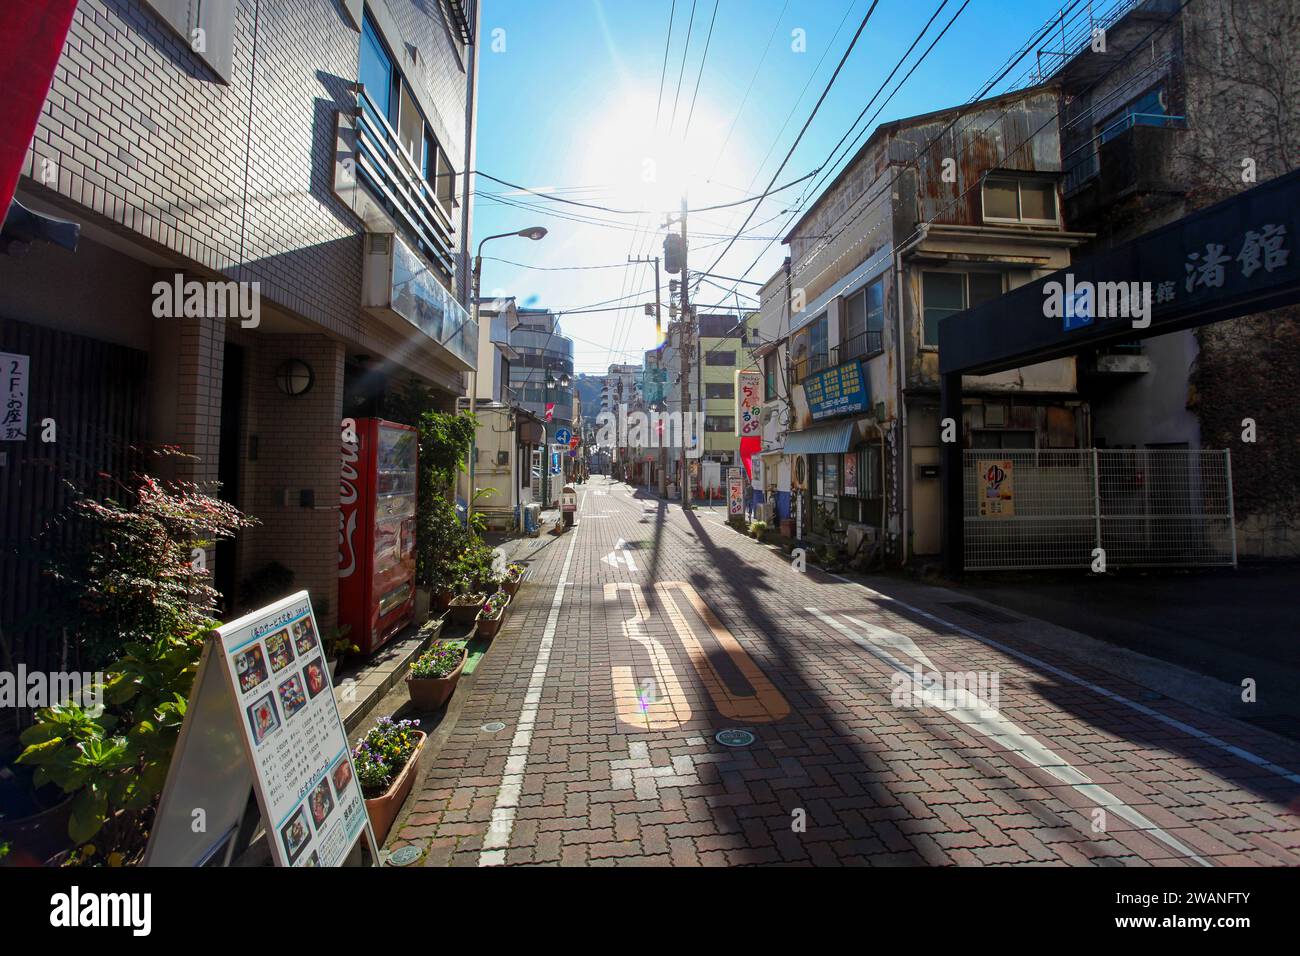 Città di Atami sulla penisola di Izu nella prefettura di Shizuopka, Giappone. Preso in una giornata di sole con un cielo blu e quasi nessuna gente intorno. Foto Stock